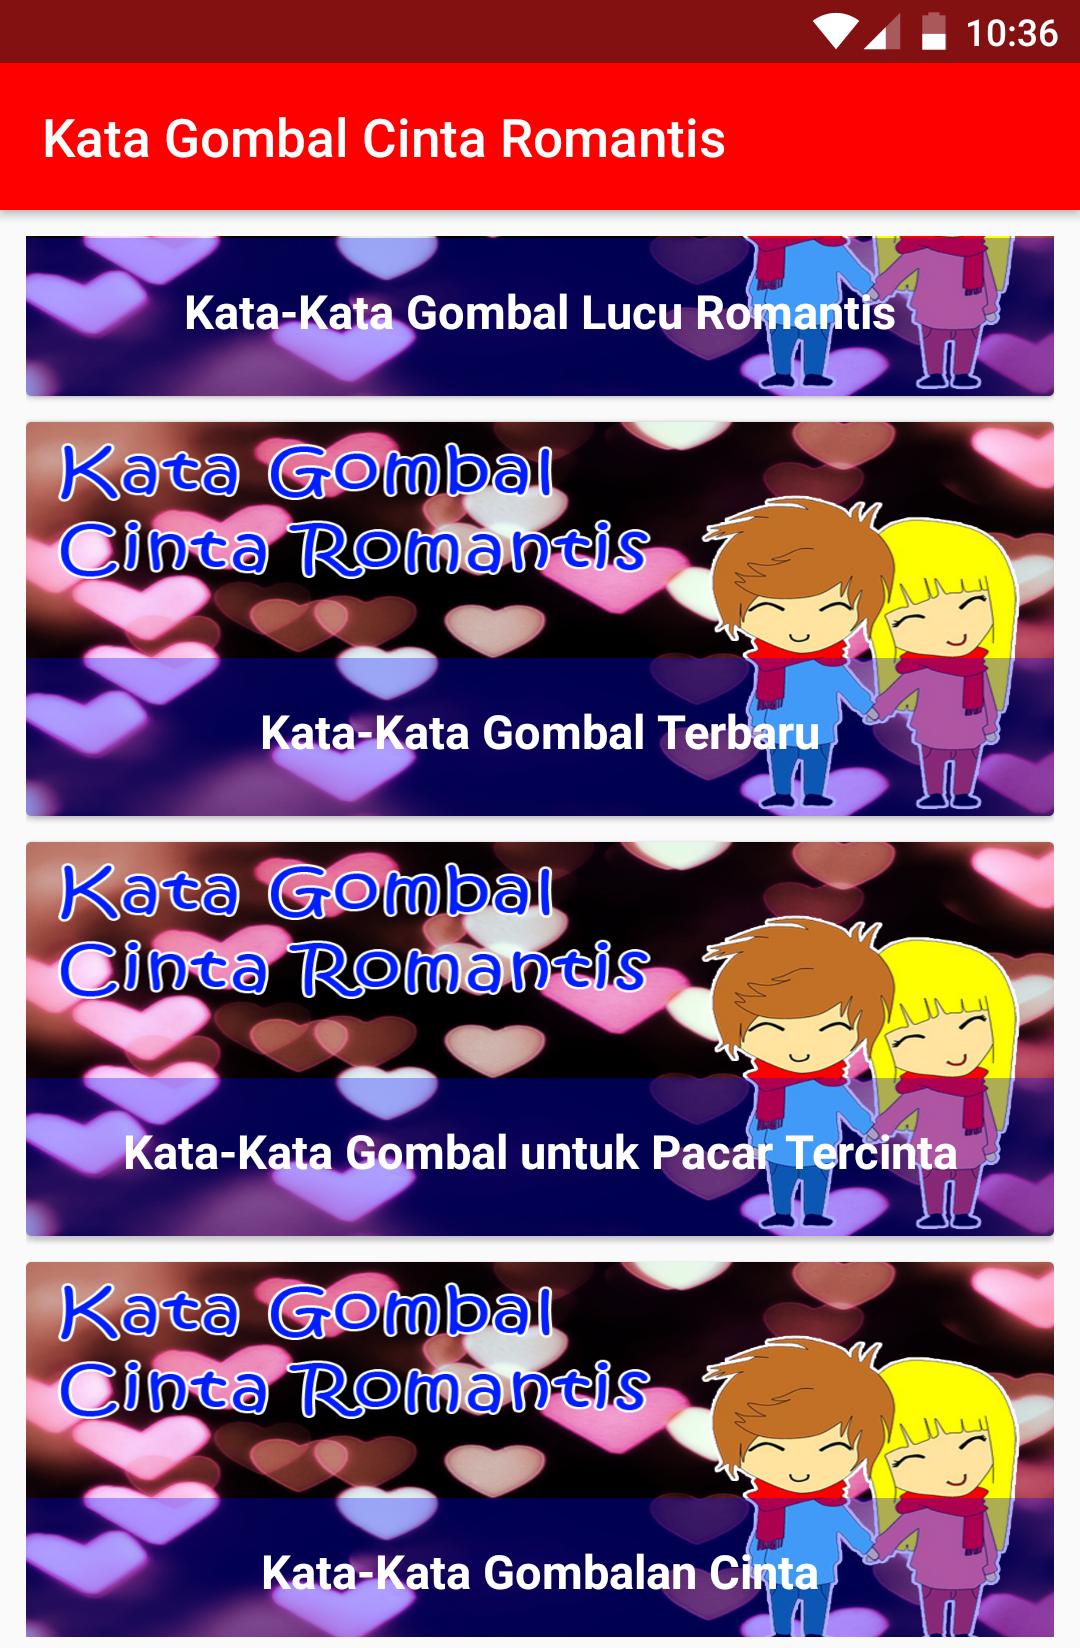 Kata Kata Gombal Cinta Romantis For Android Apk Download